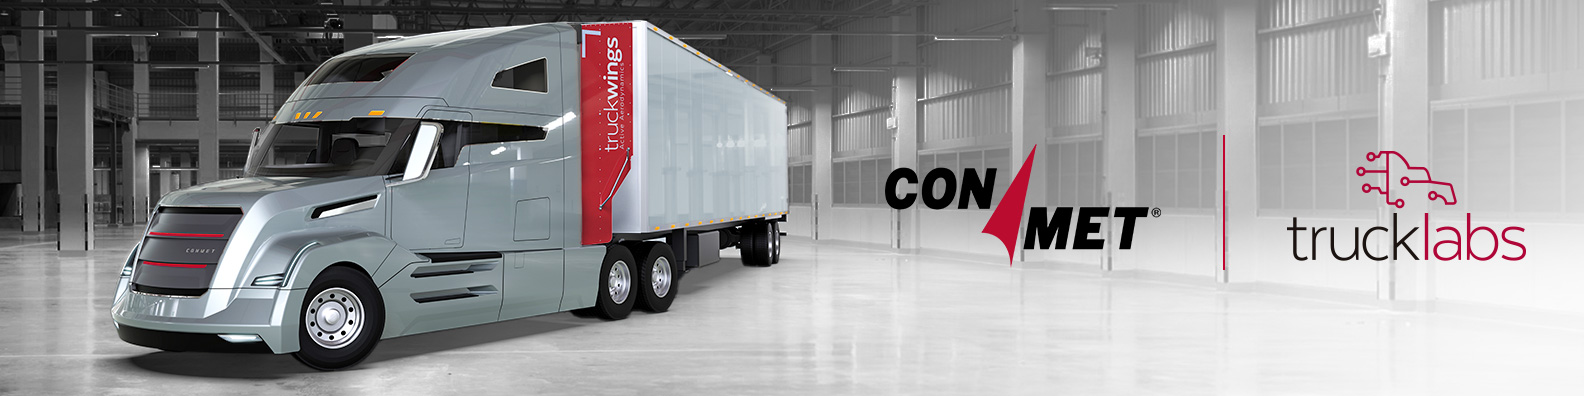 Anuncio de la adquisición de Trucklabs por parte de ConMet que muestra un camión de ConMet con TruckWings